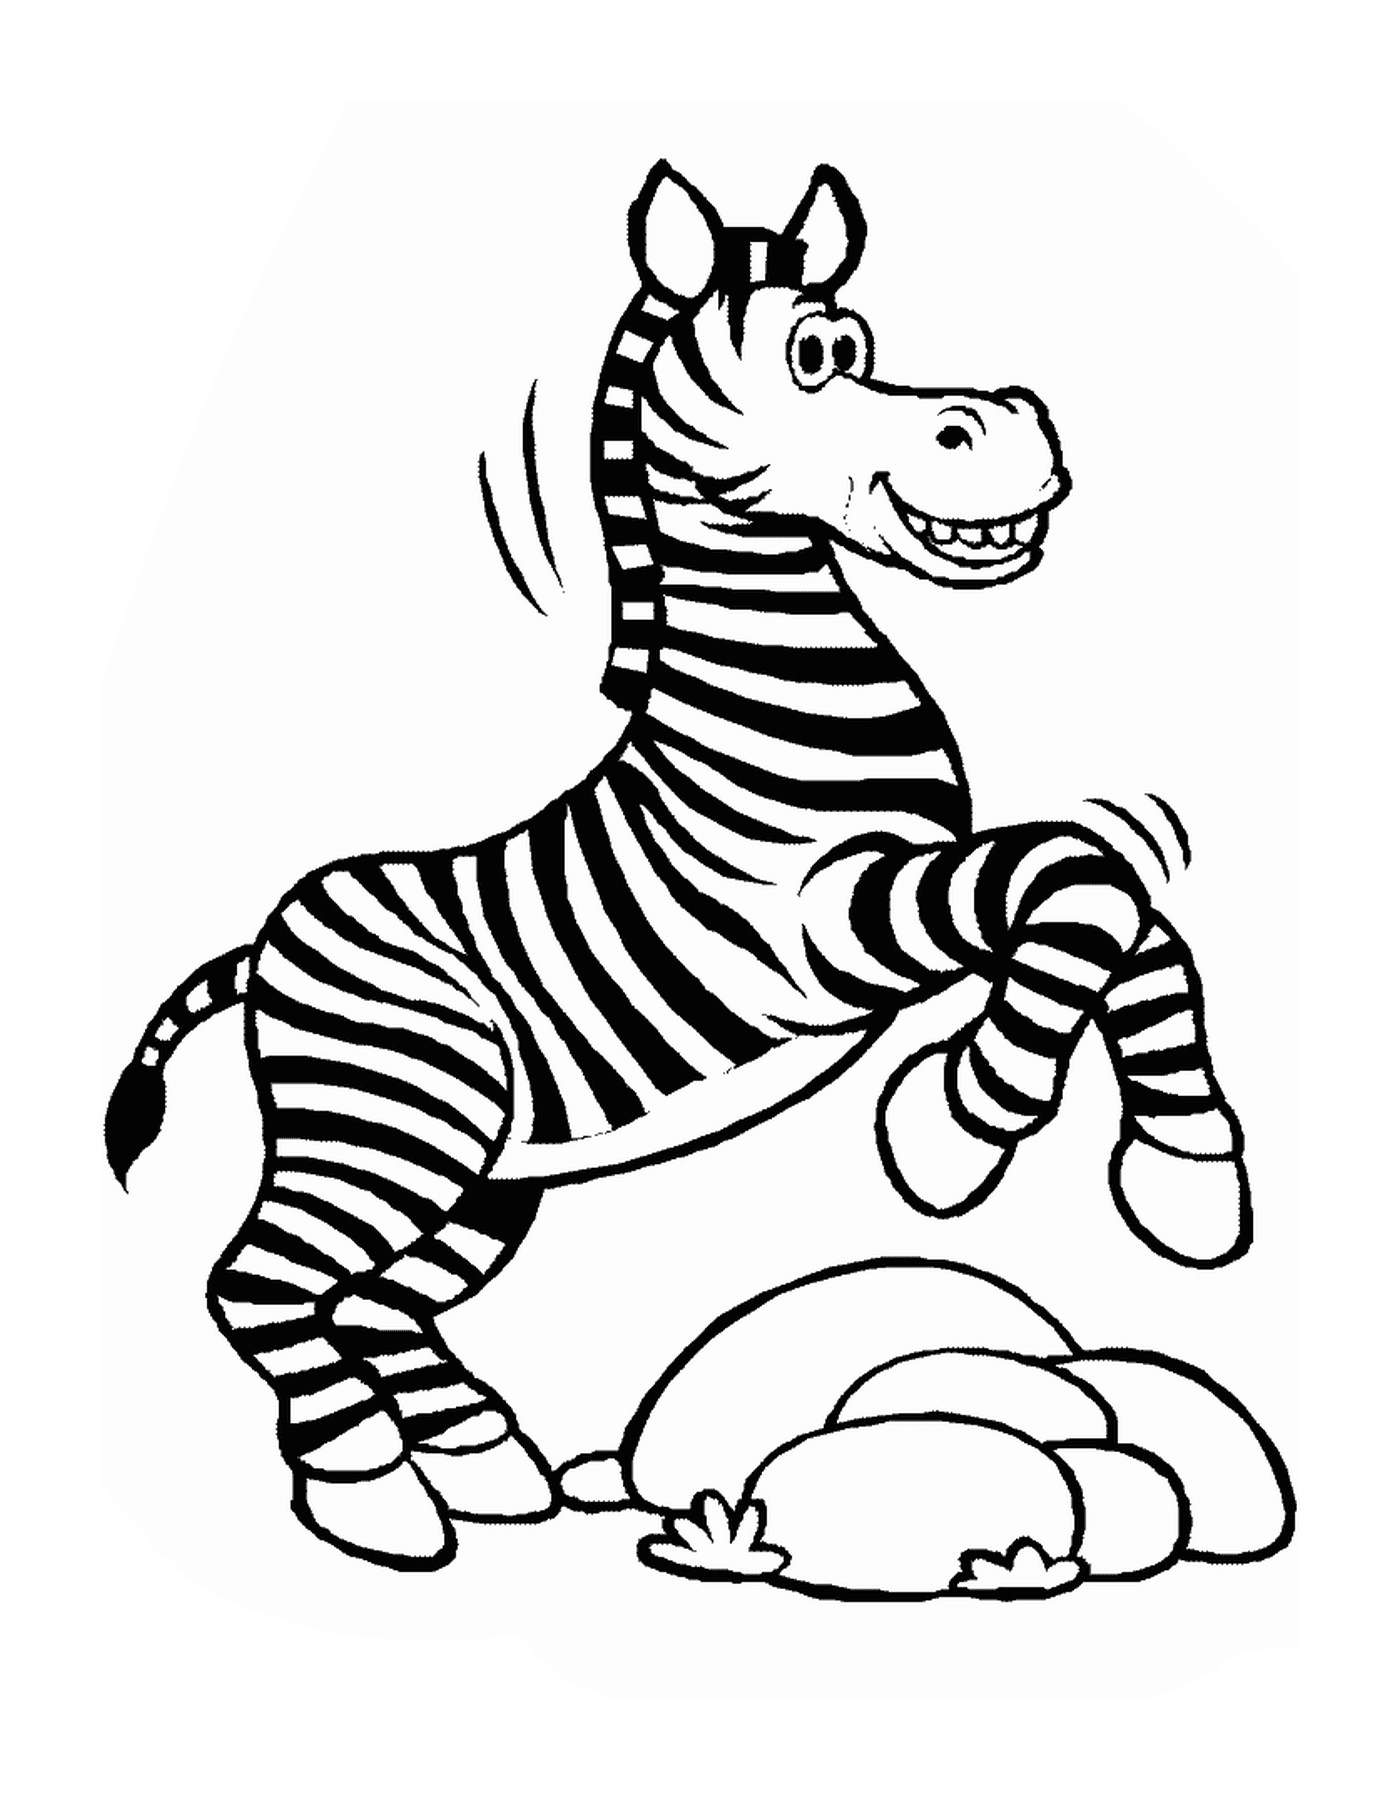  Zebra saltando no ar 